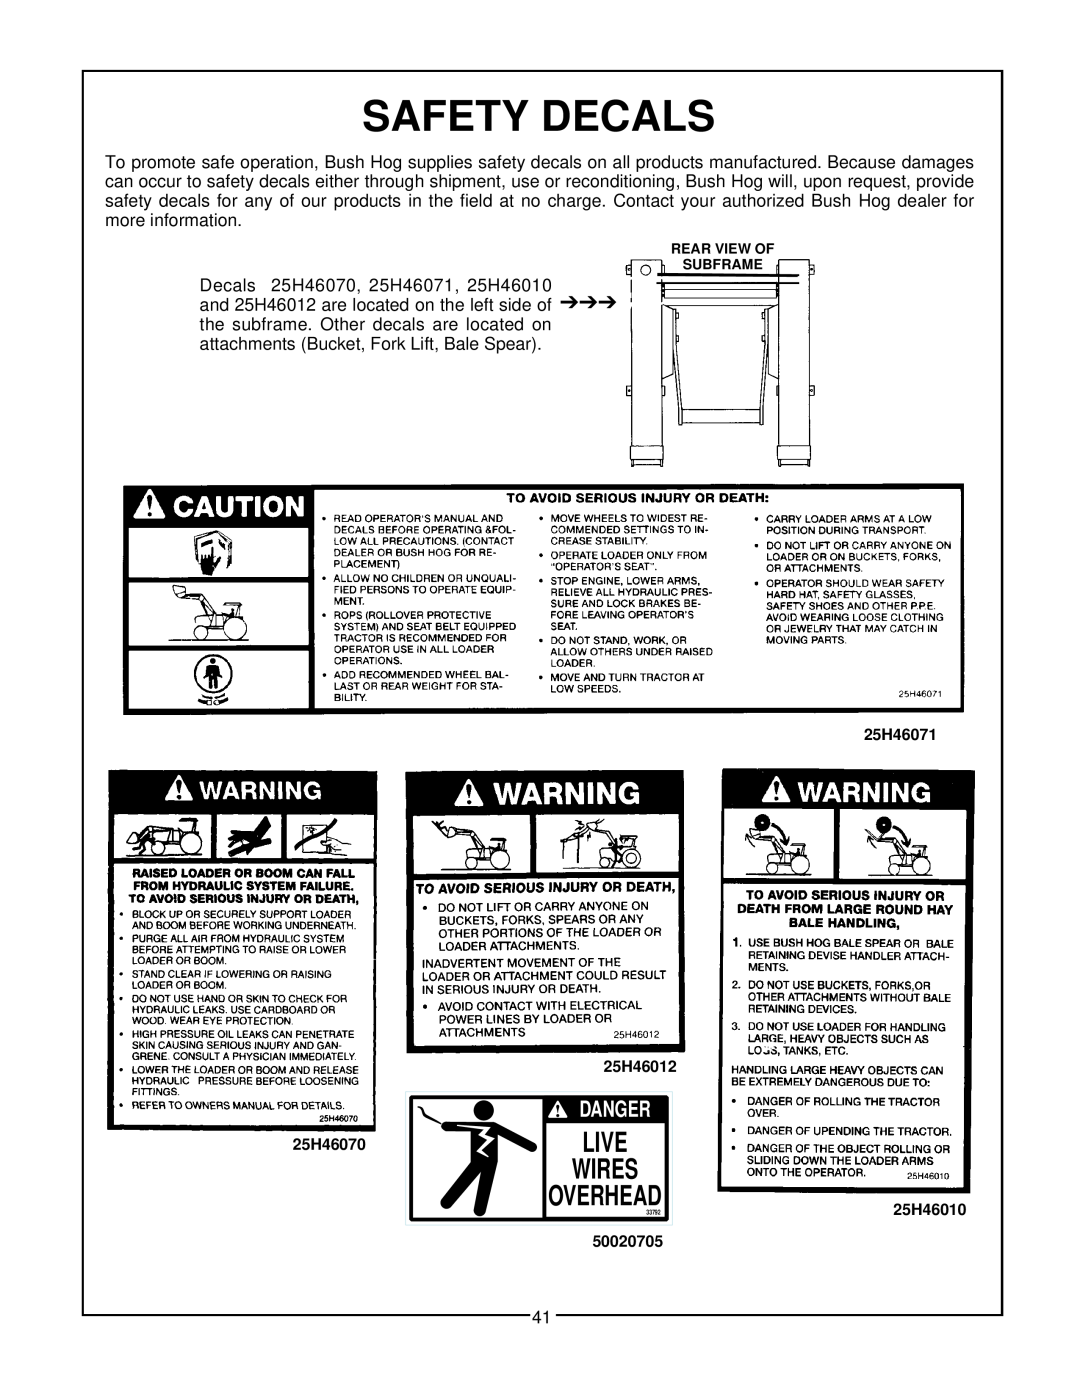 Bush Hog 3860 QT manual Safety Decals, Danger, Live, Wires, Overhead 